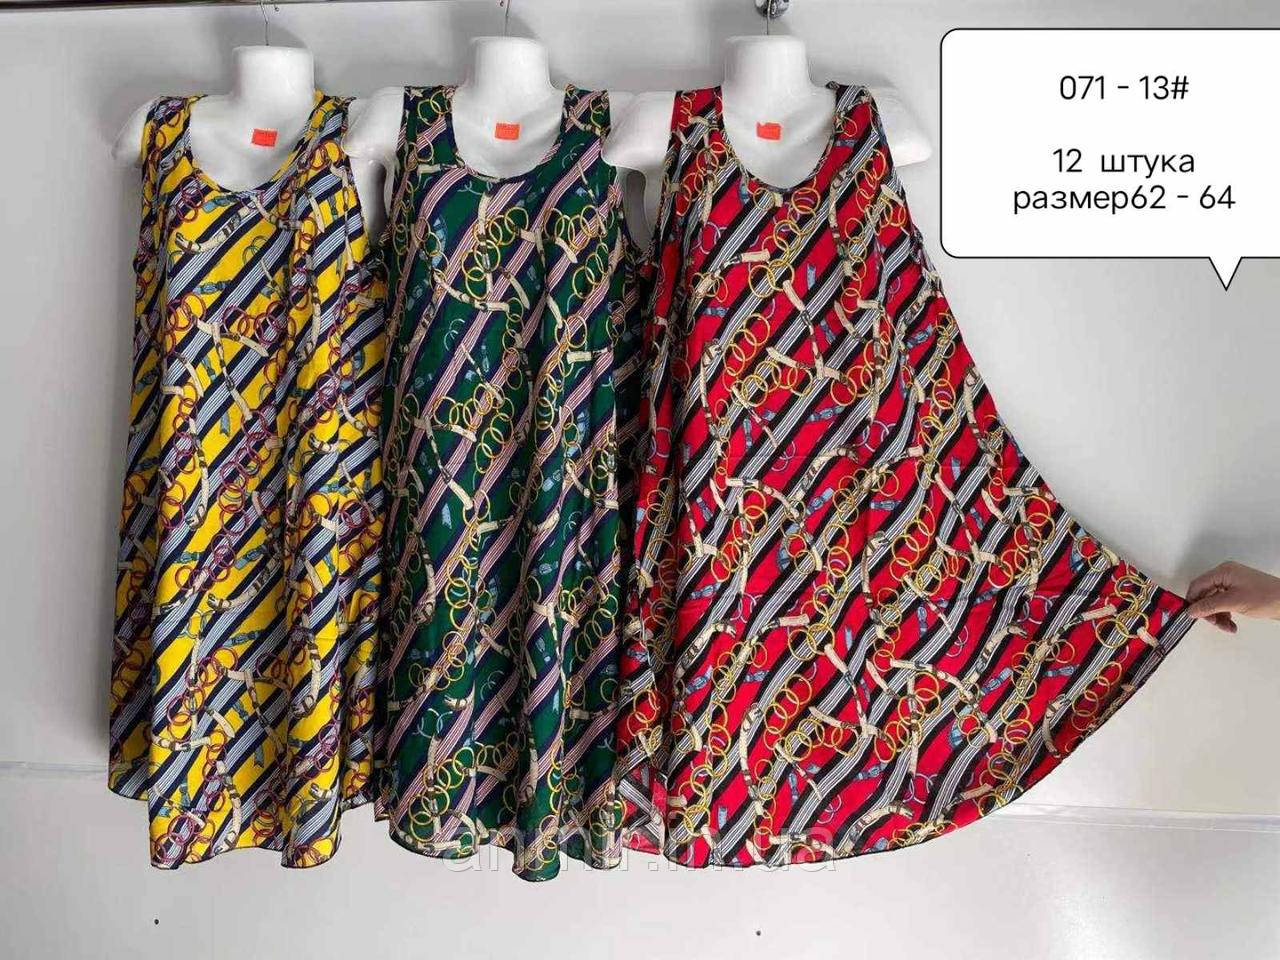 Жіноче розкльошене батальне плаття ПОЛОСА розмір 62-64,мікс кольорів у пакованні